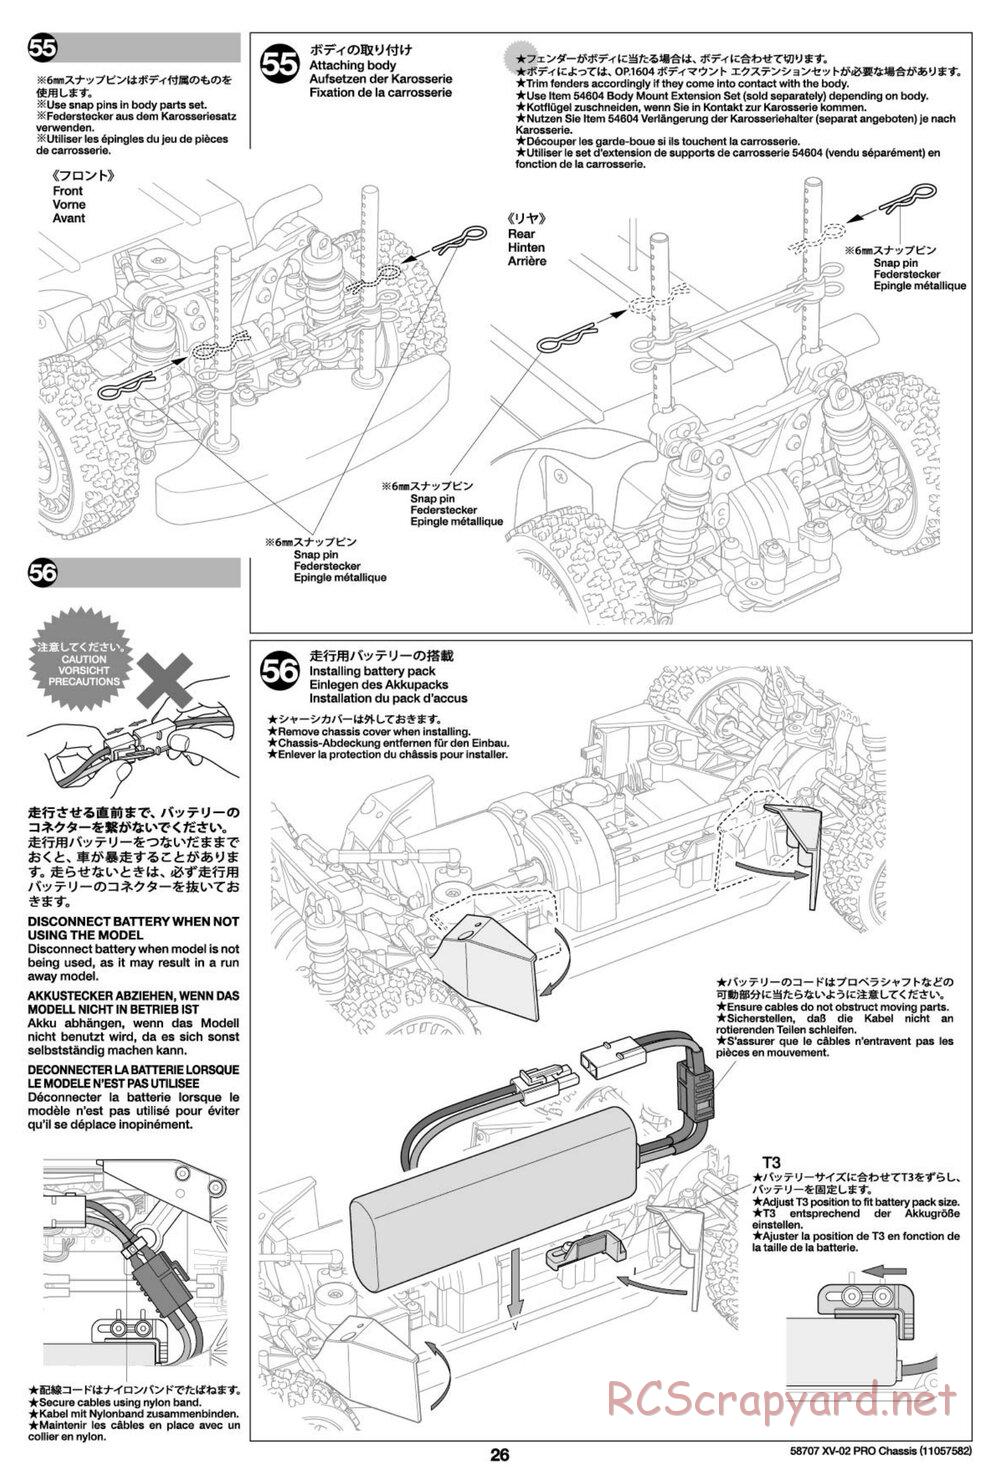 Tamiya - XV-02 Pro Chassis - Manual - Page 26